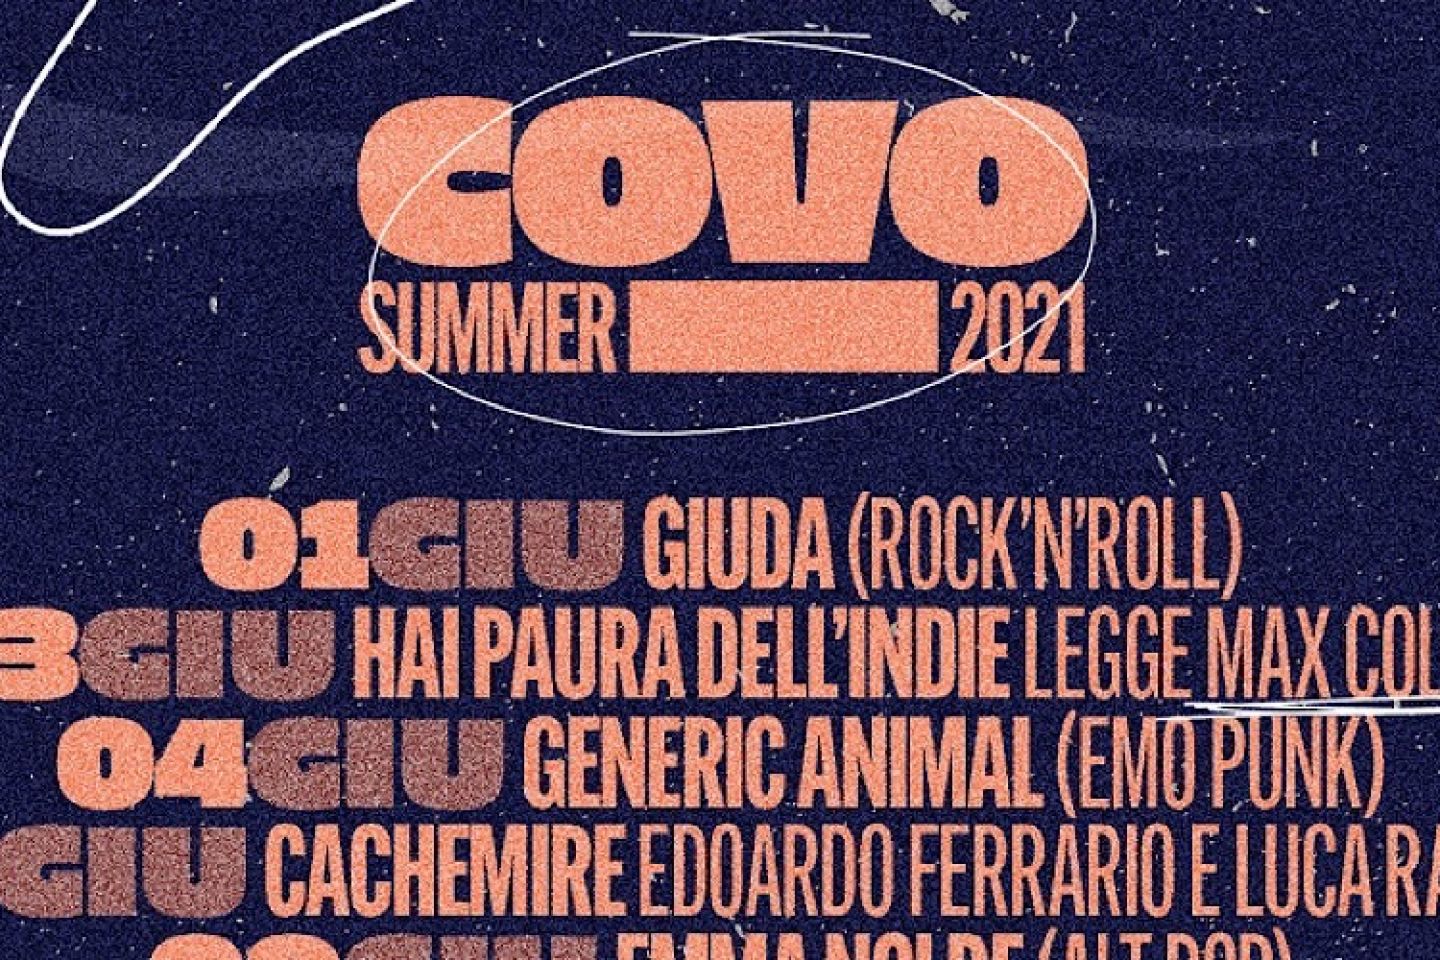 Giugno 2021 al COVO SUMMER: il programma completo tra concerti, stand-up comedy e Euro 2021